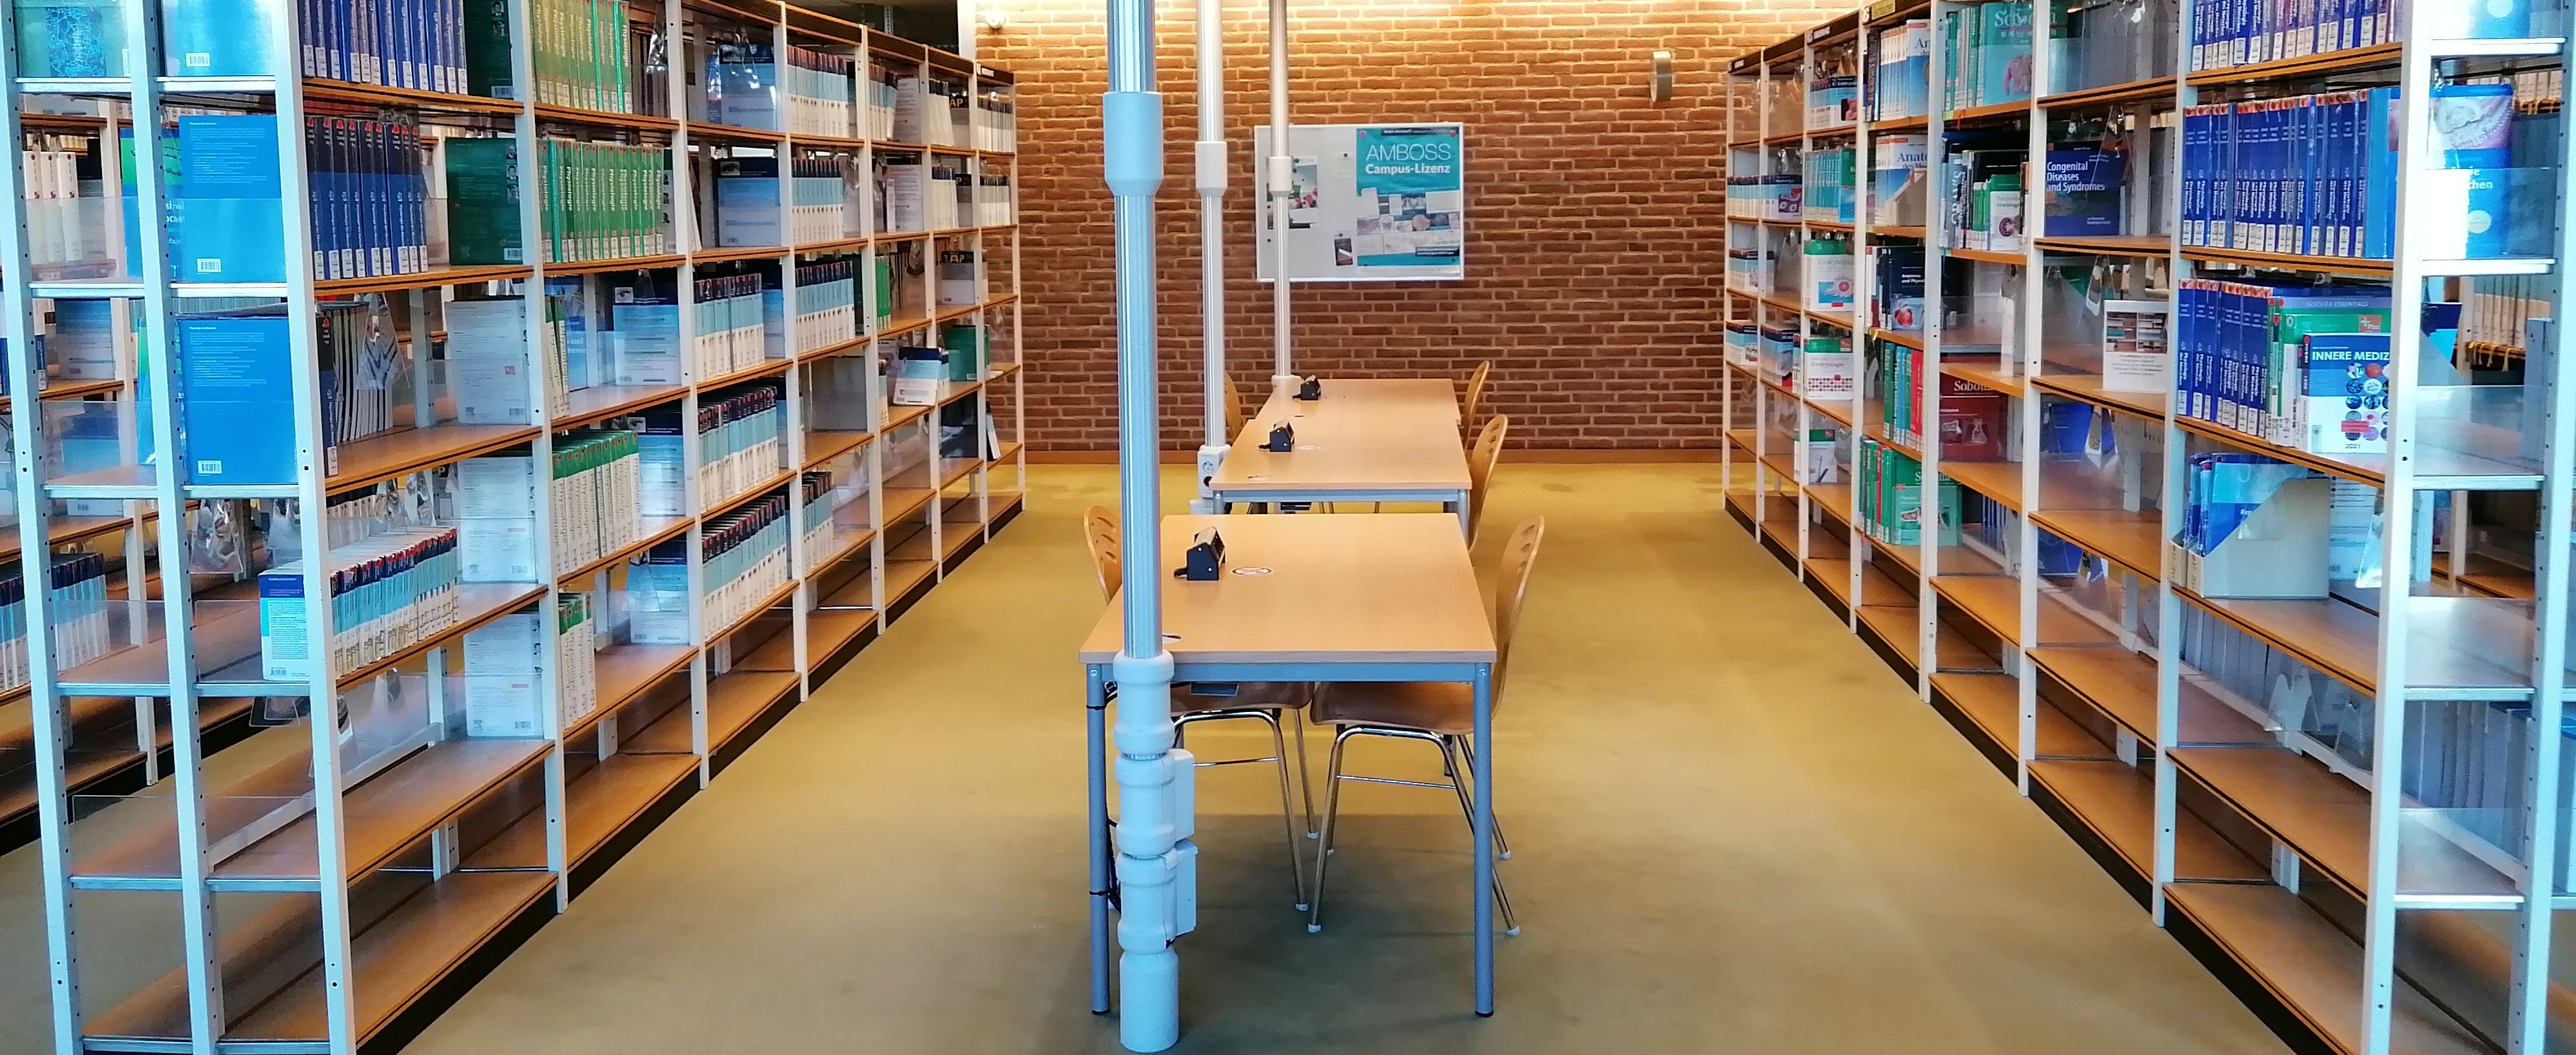 Lernplätze im unteren Lesesaal zwischen Regalen mit ausleihbaren Büchern